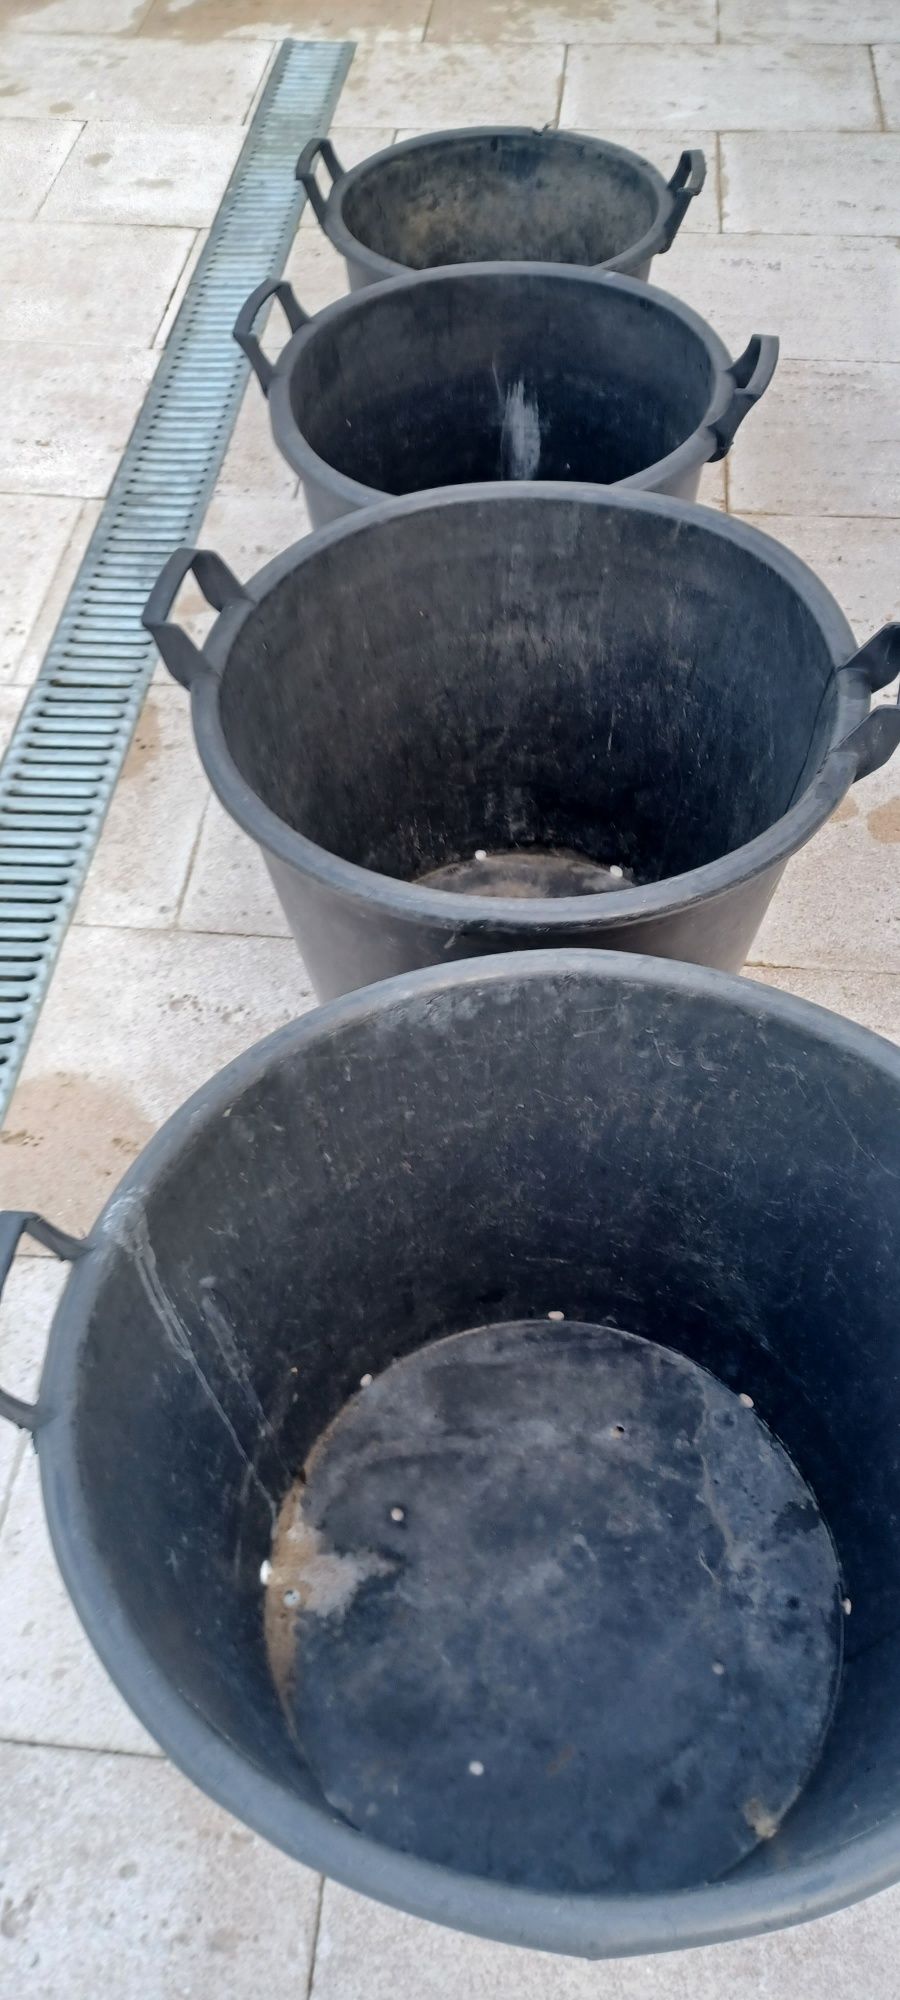 4 baldes de apoio a jardinagem em bom eatado.